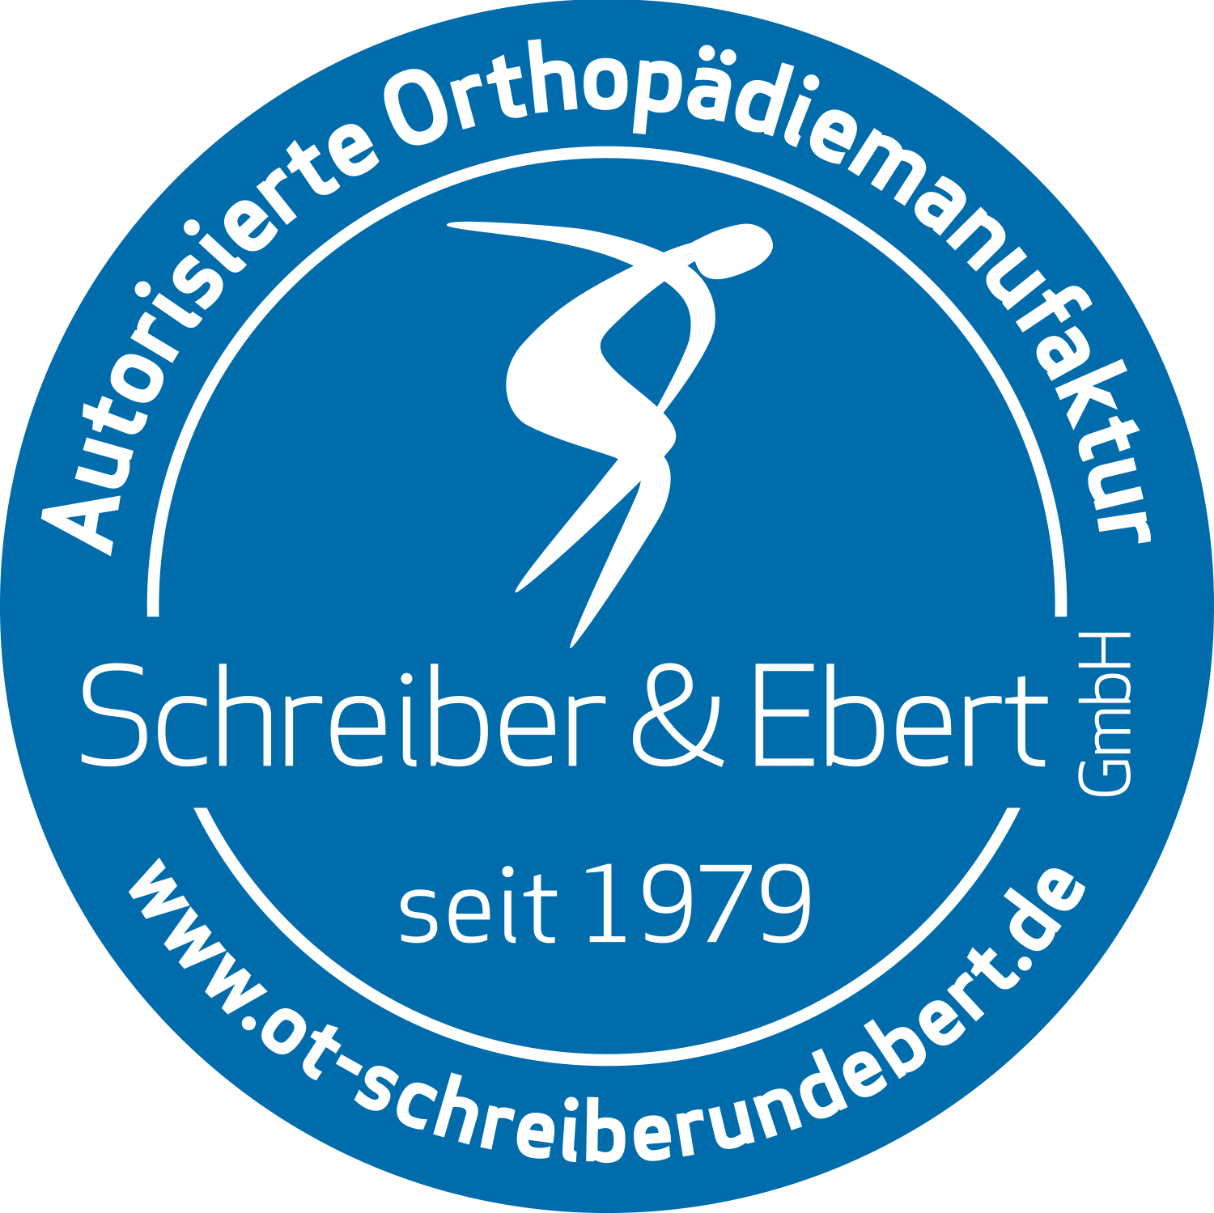 Orthopädie-Technik Schreiber & Ebert GmbH Bewertungen